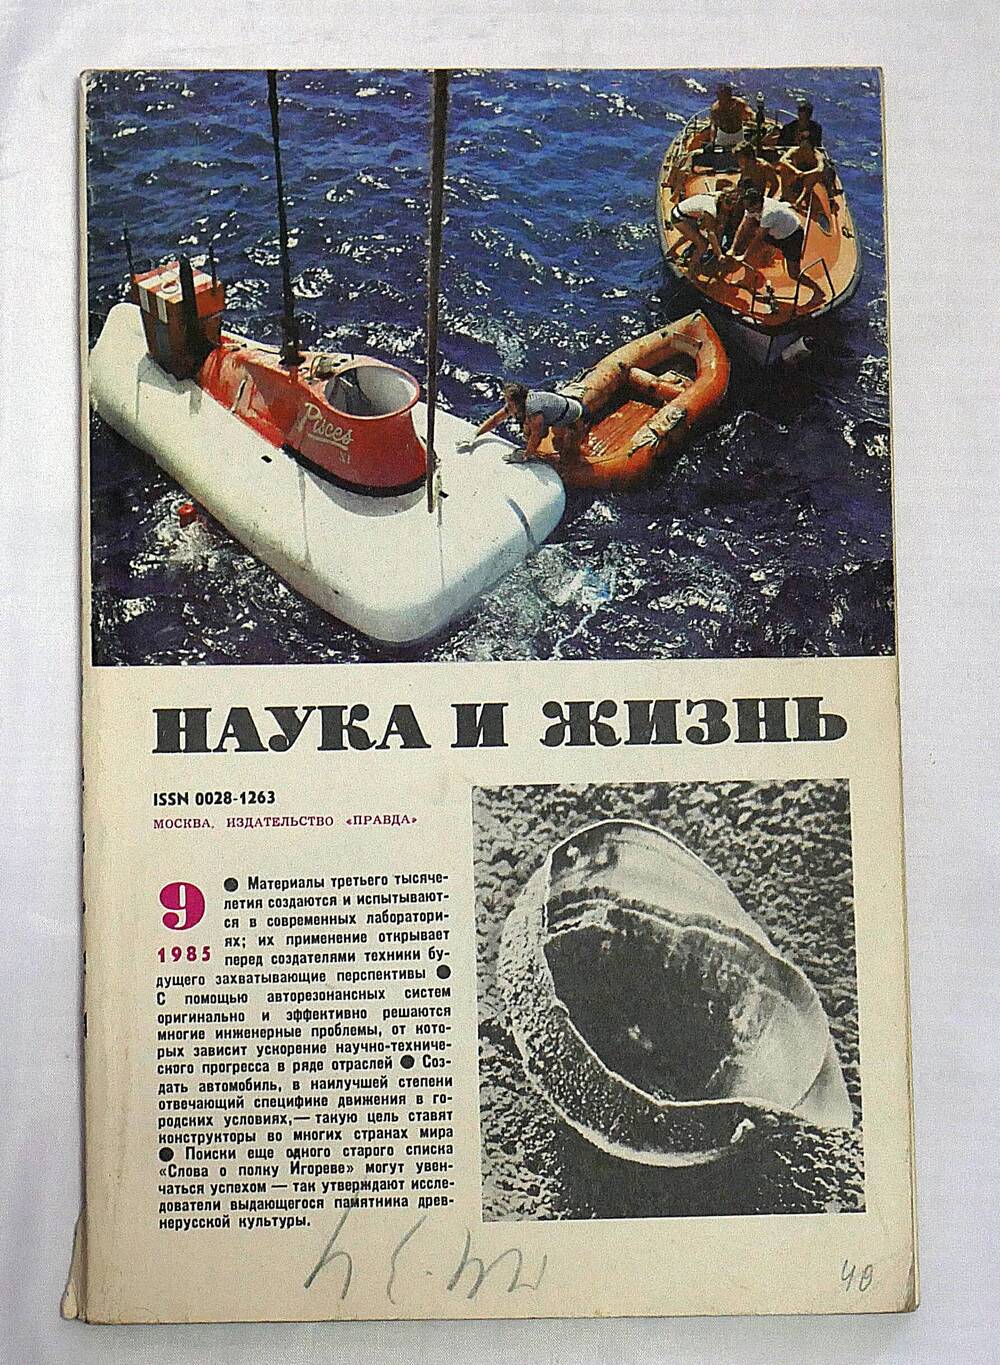 Журнал. Наука и жизнь. № 9 сентябрь 1985 г.